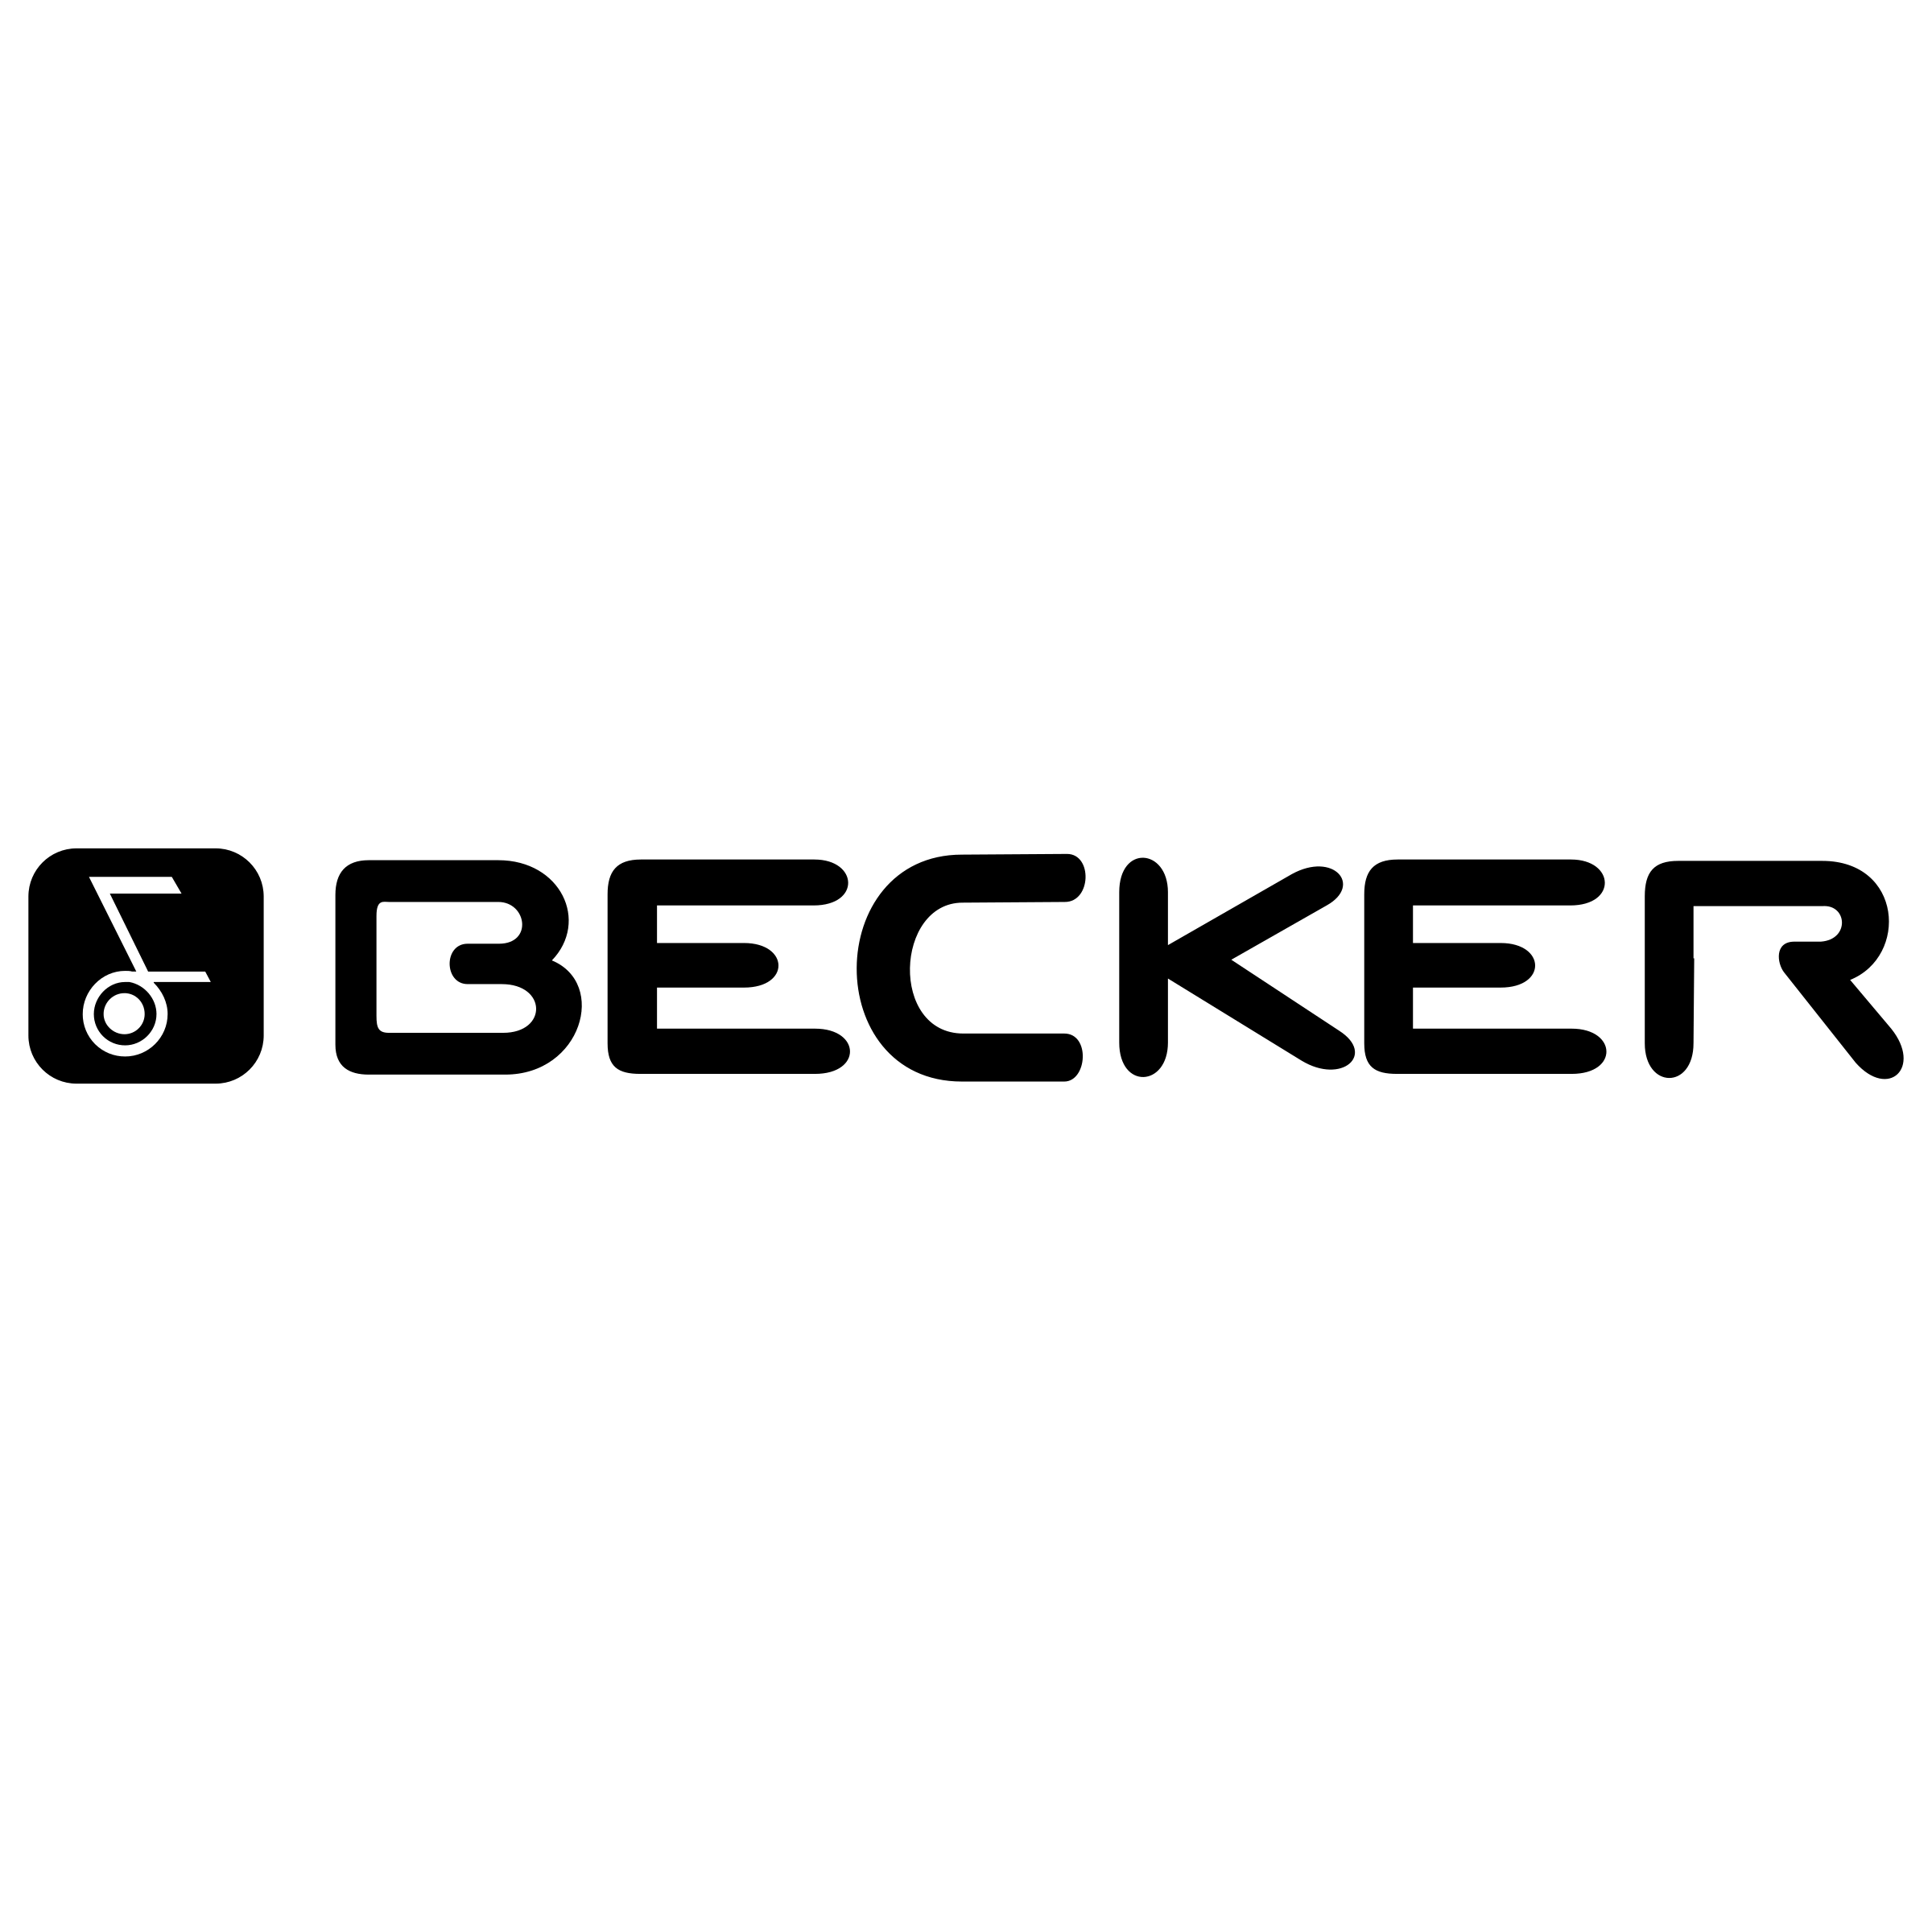 Becker Logo - Becker Logo PNG Transparent & SVG Vector - Freebie Supply